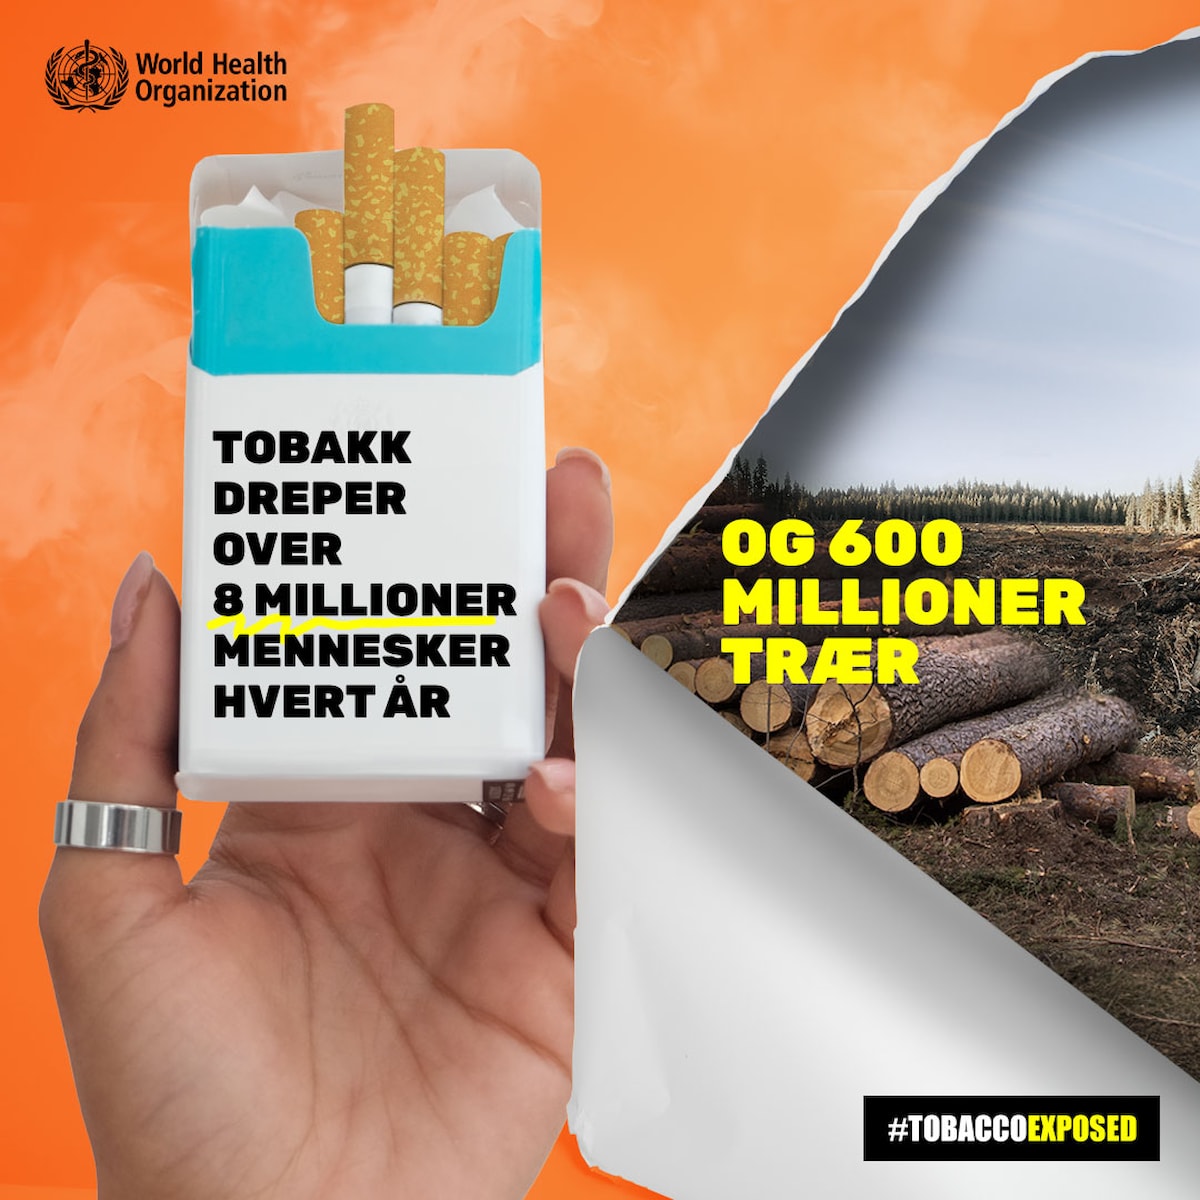 Tobakksundustrien: Prøv våre håndlagde produkter (WHO)